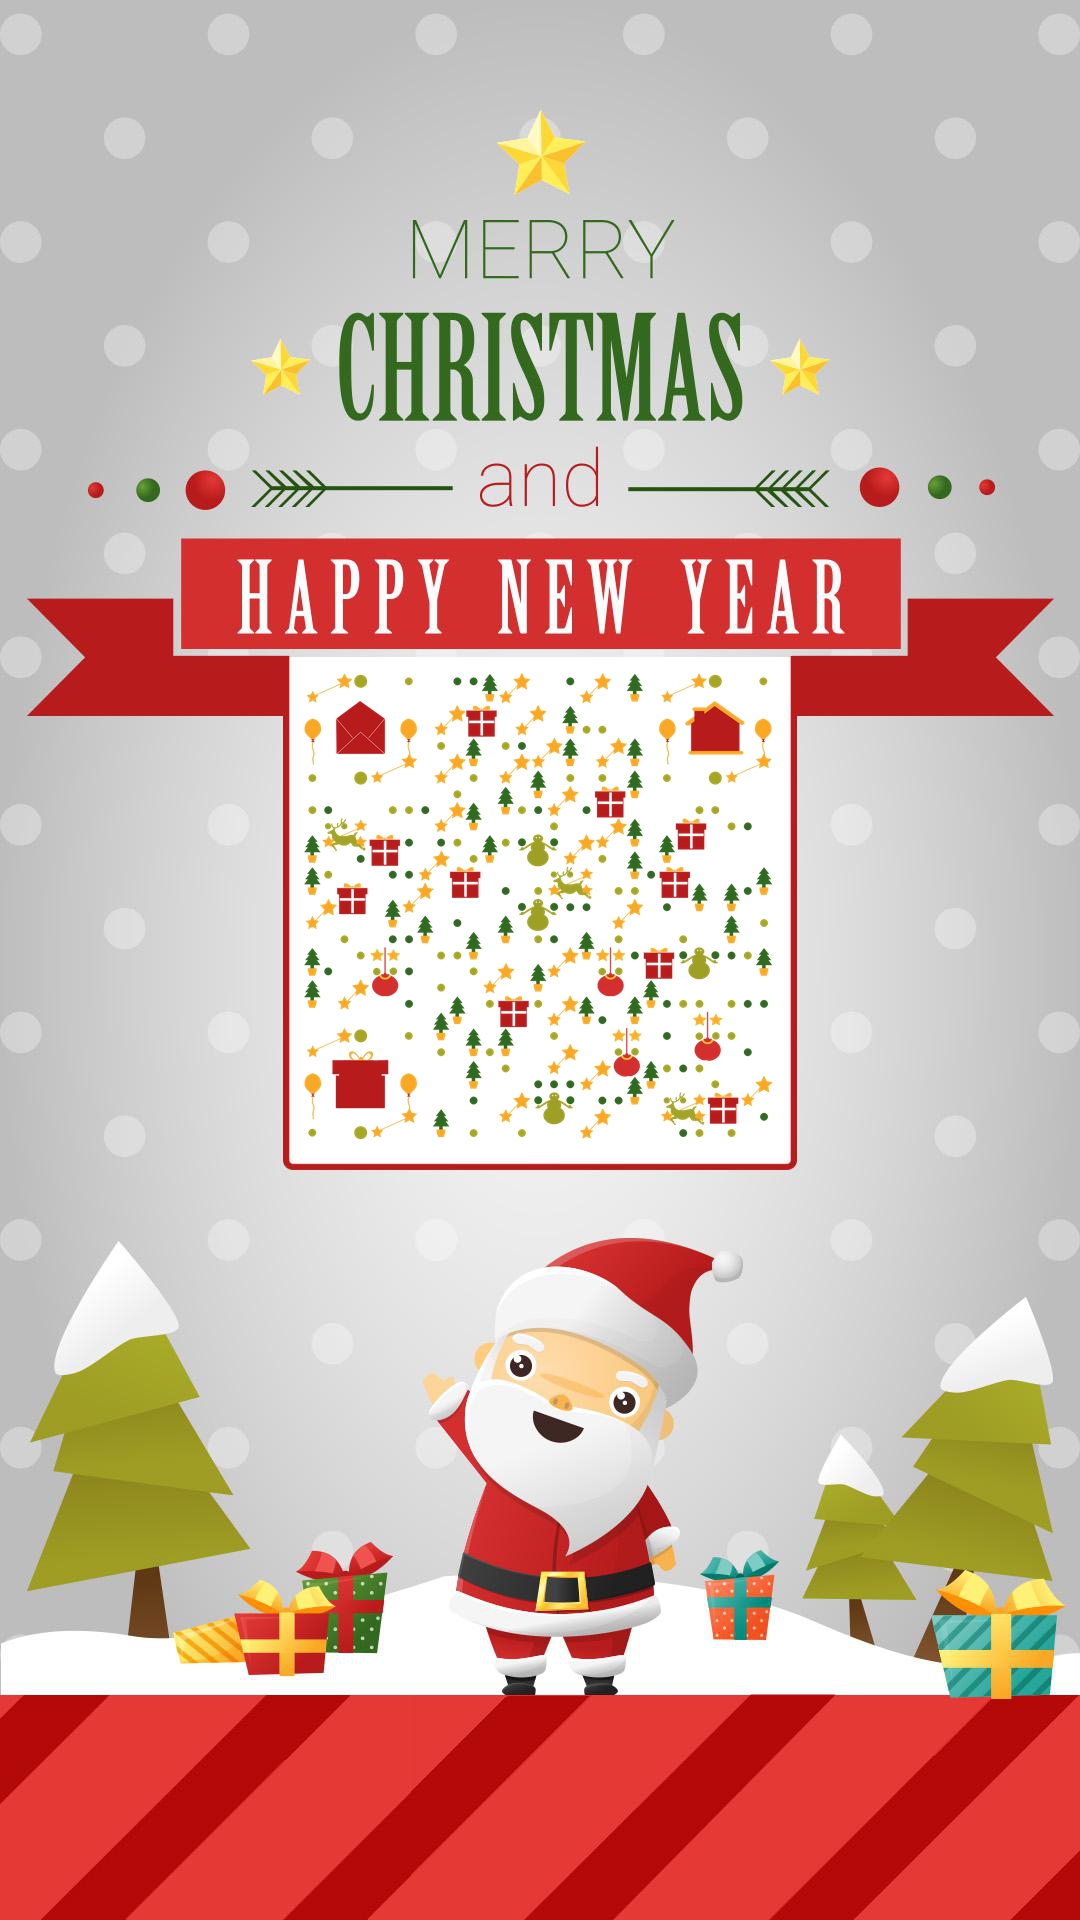 圣诞节红色可爱圣诞老人松树礼物下雪雪堆二维码-手机壁纸-平面静态